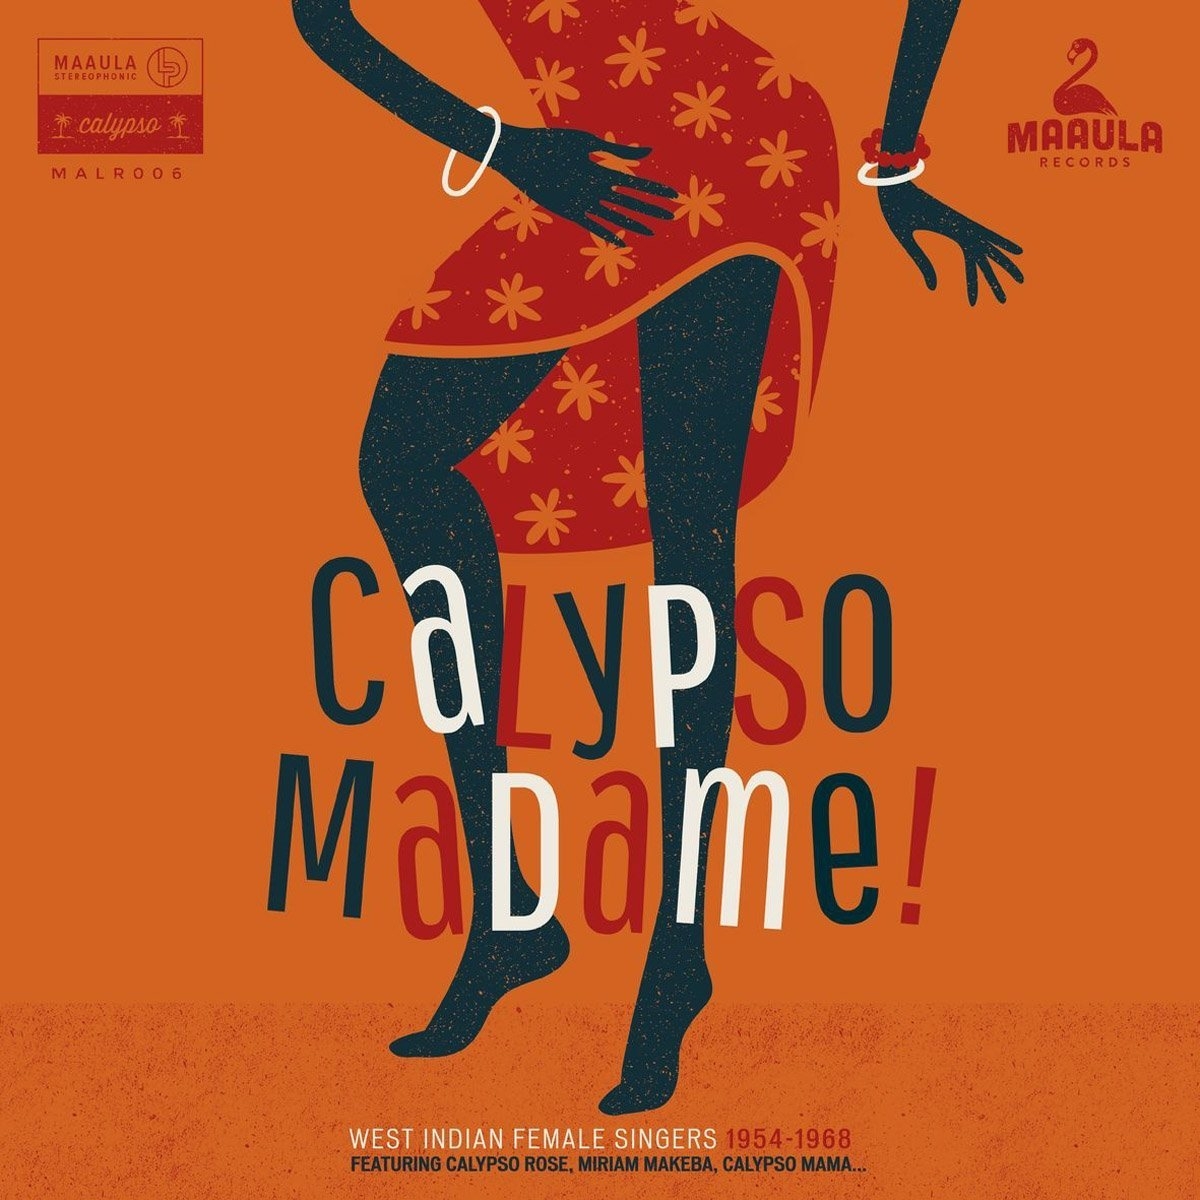 world 02 18 calypso Madame